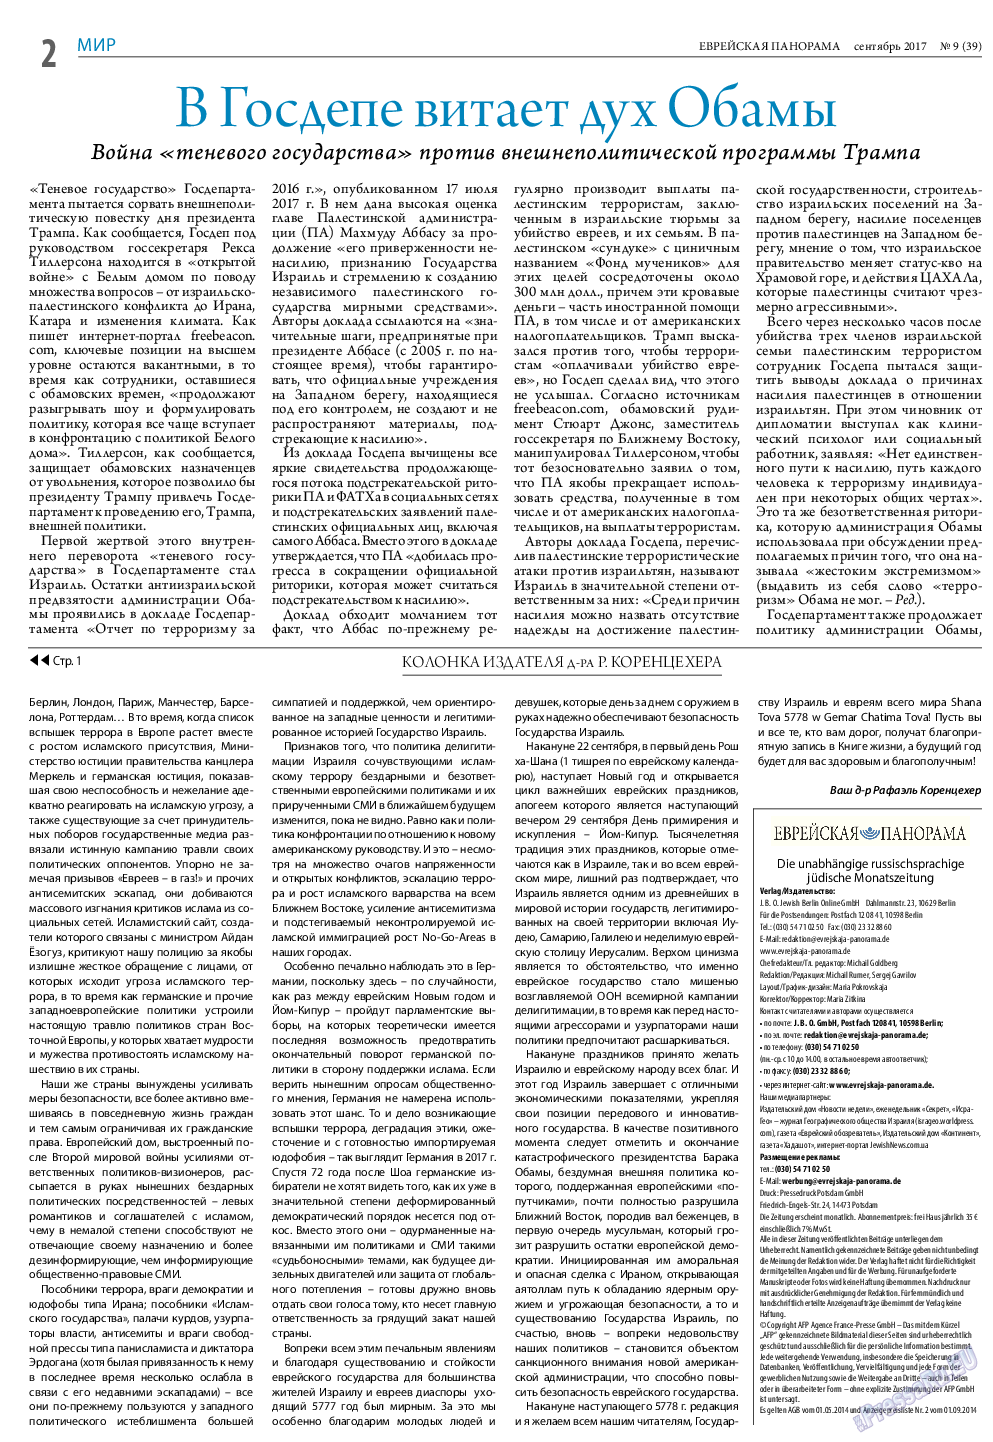 Еврейская панорама (газета). 2017 год, номер 9, стр. 2